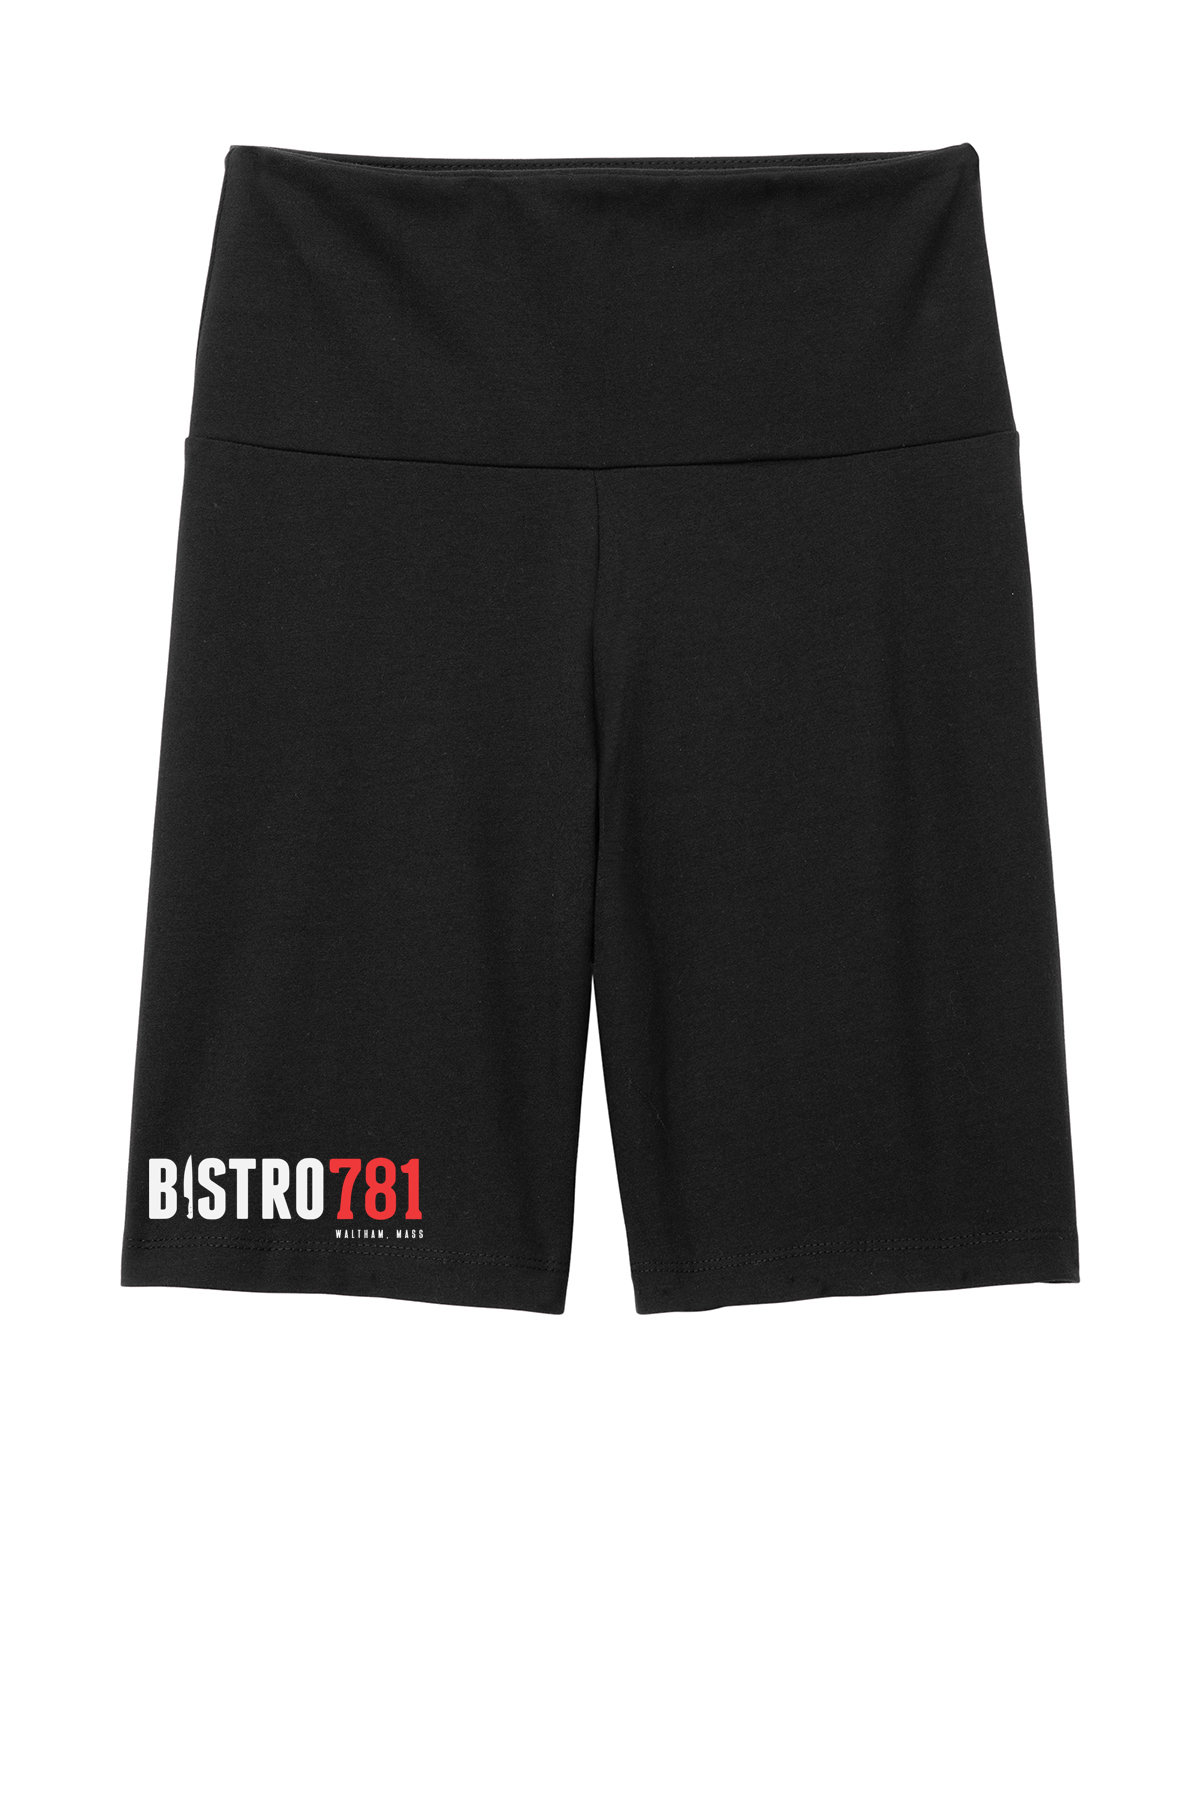 Bistro781 Women’s Flex High-Waist Bike Short